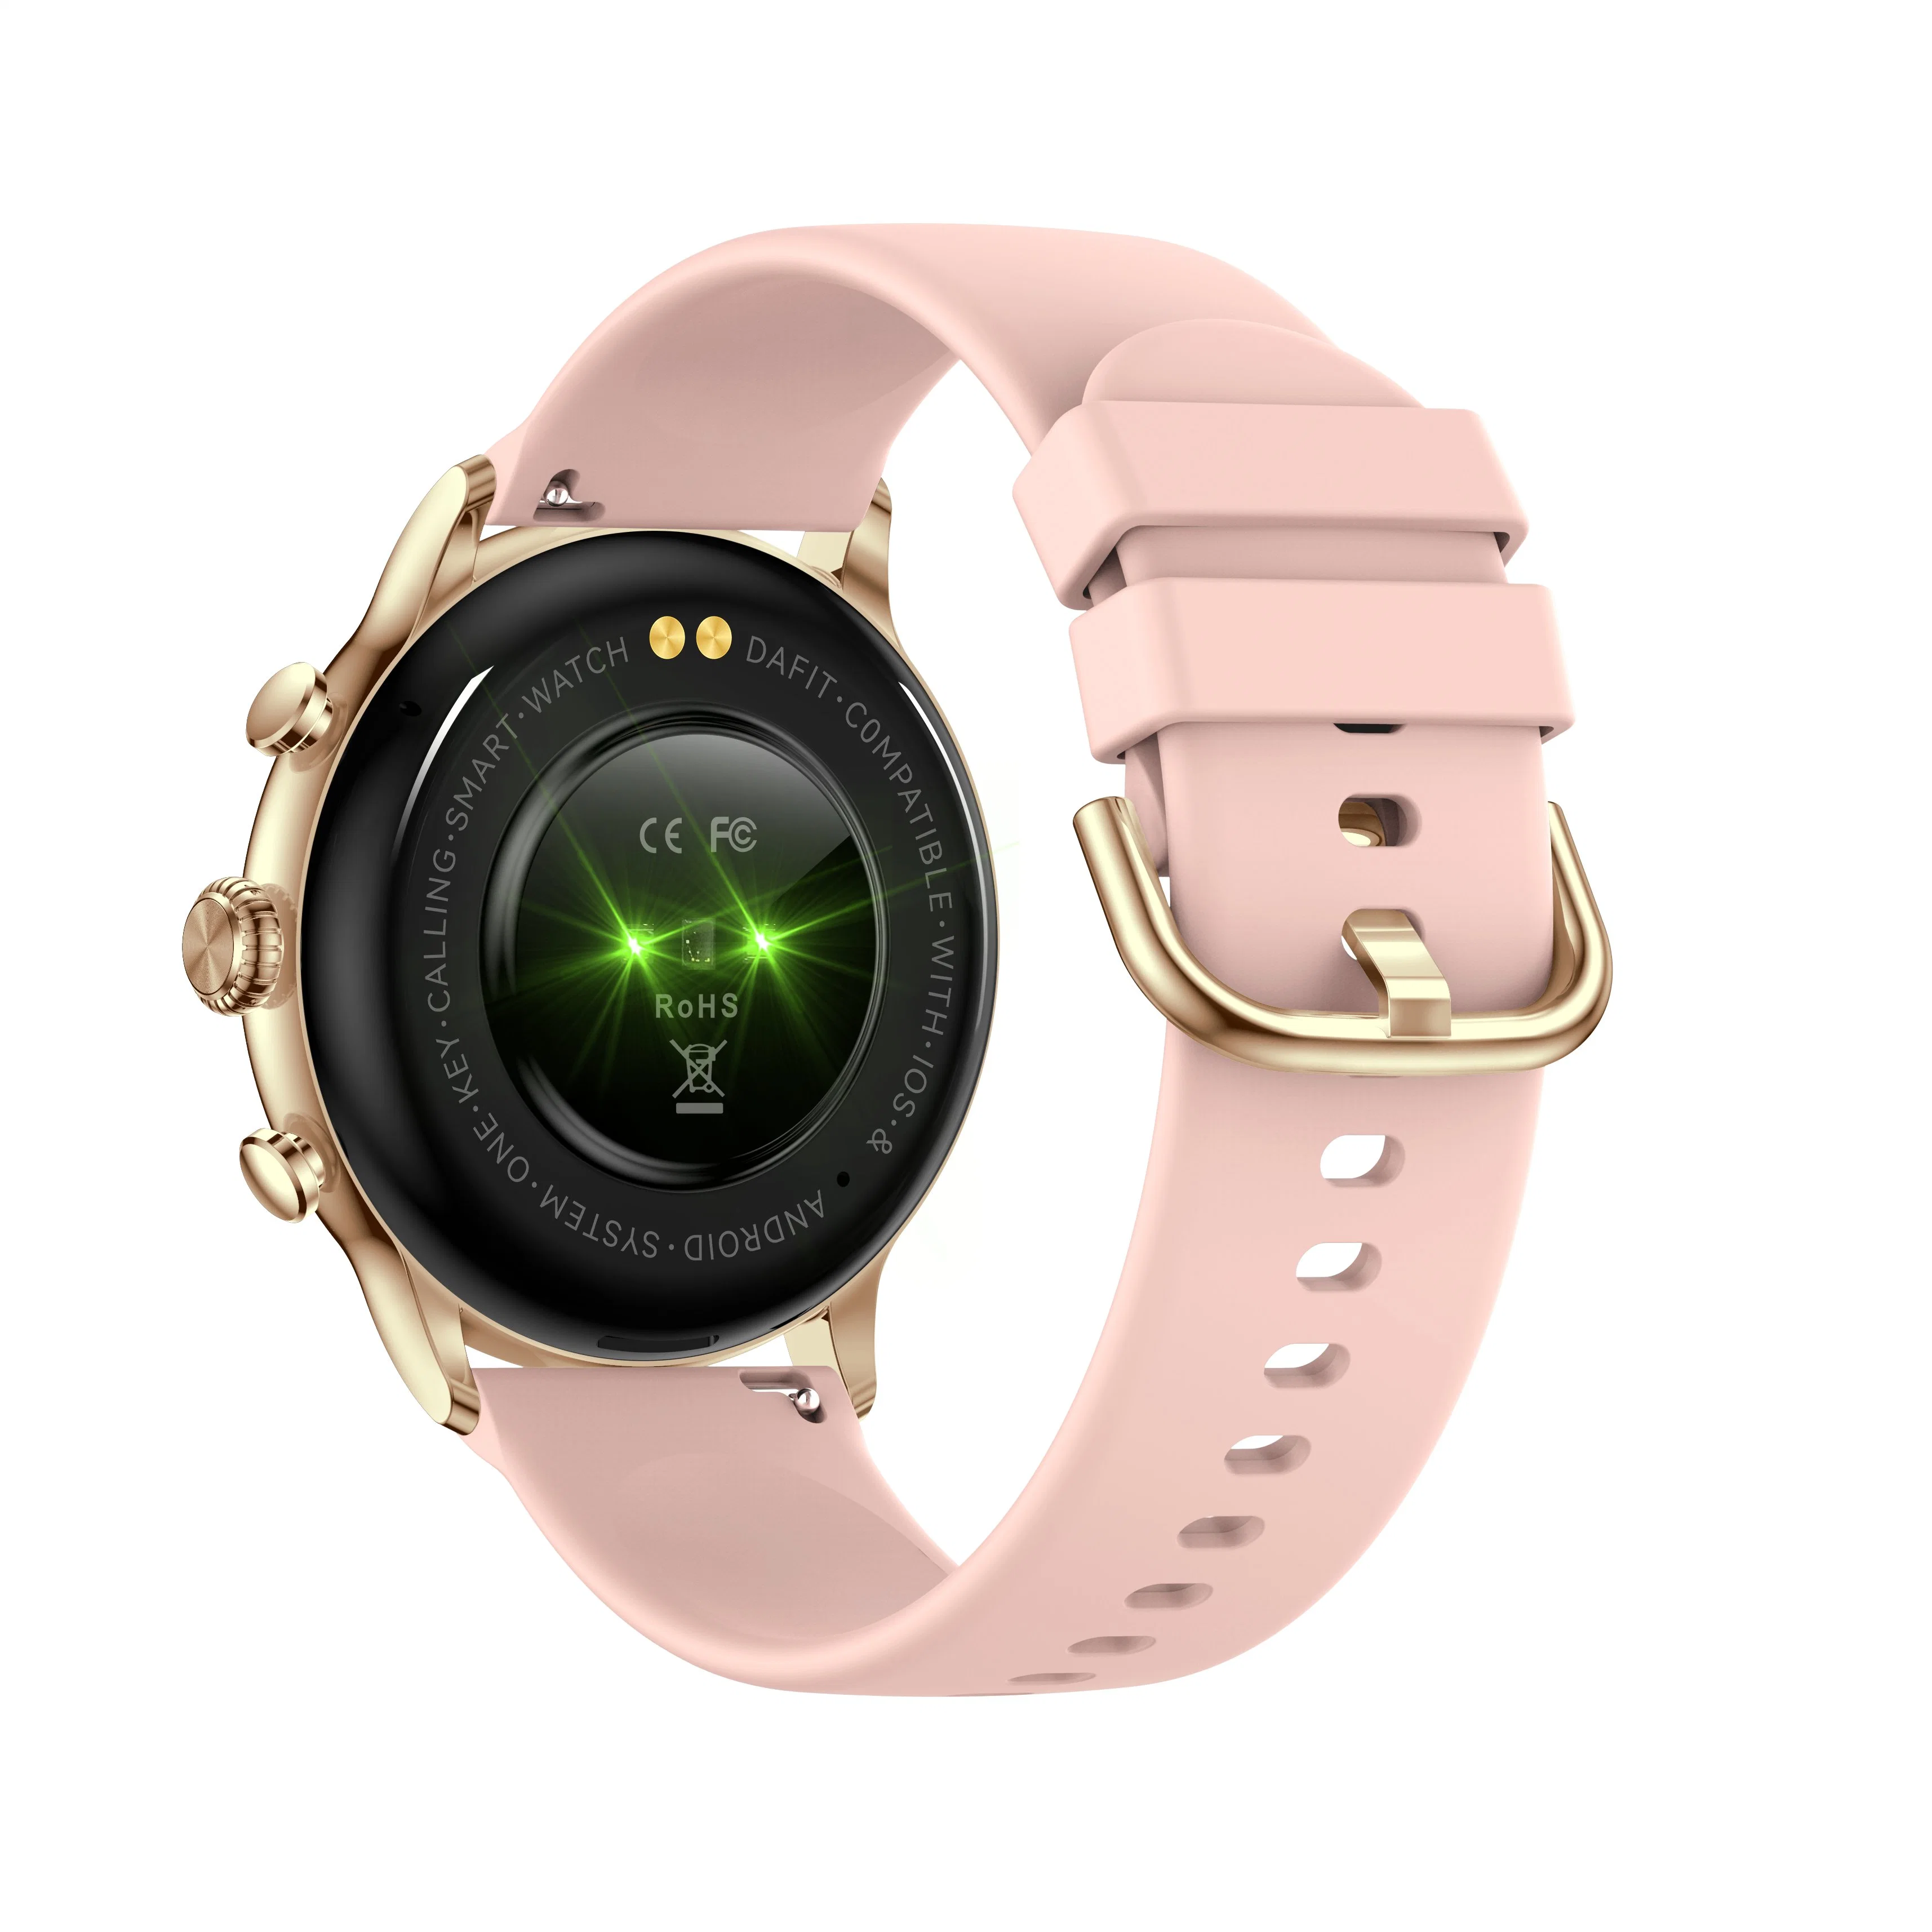 Новый экран AMOLED Fashion Подарочный вызов Пополните Inteligente Smart Спортивные наручные часы Завод Custom водонепроницаемый CE Цена для мужчин Мобильный телефон Lady Android iOS